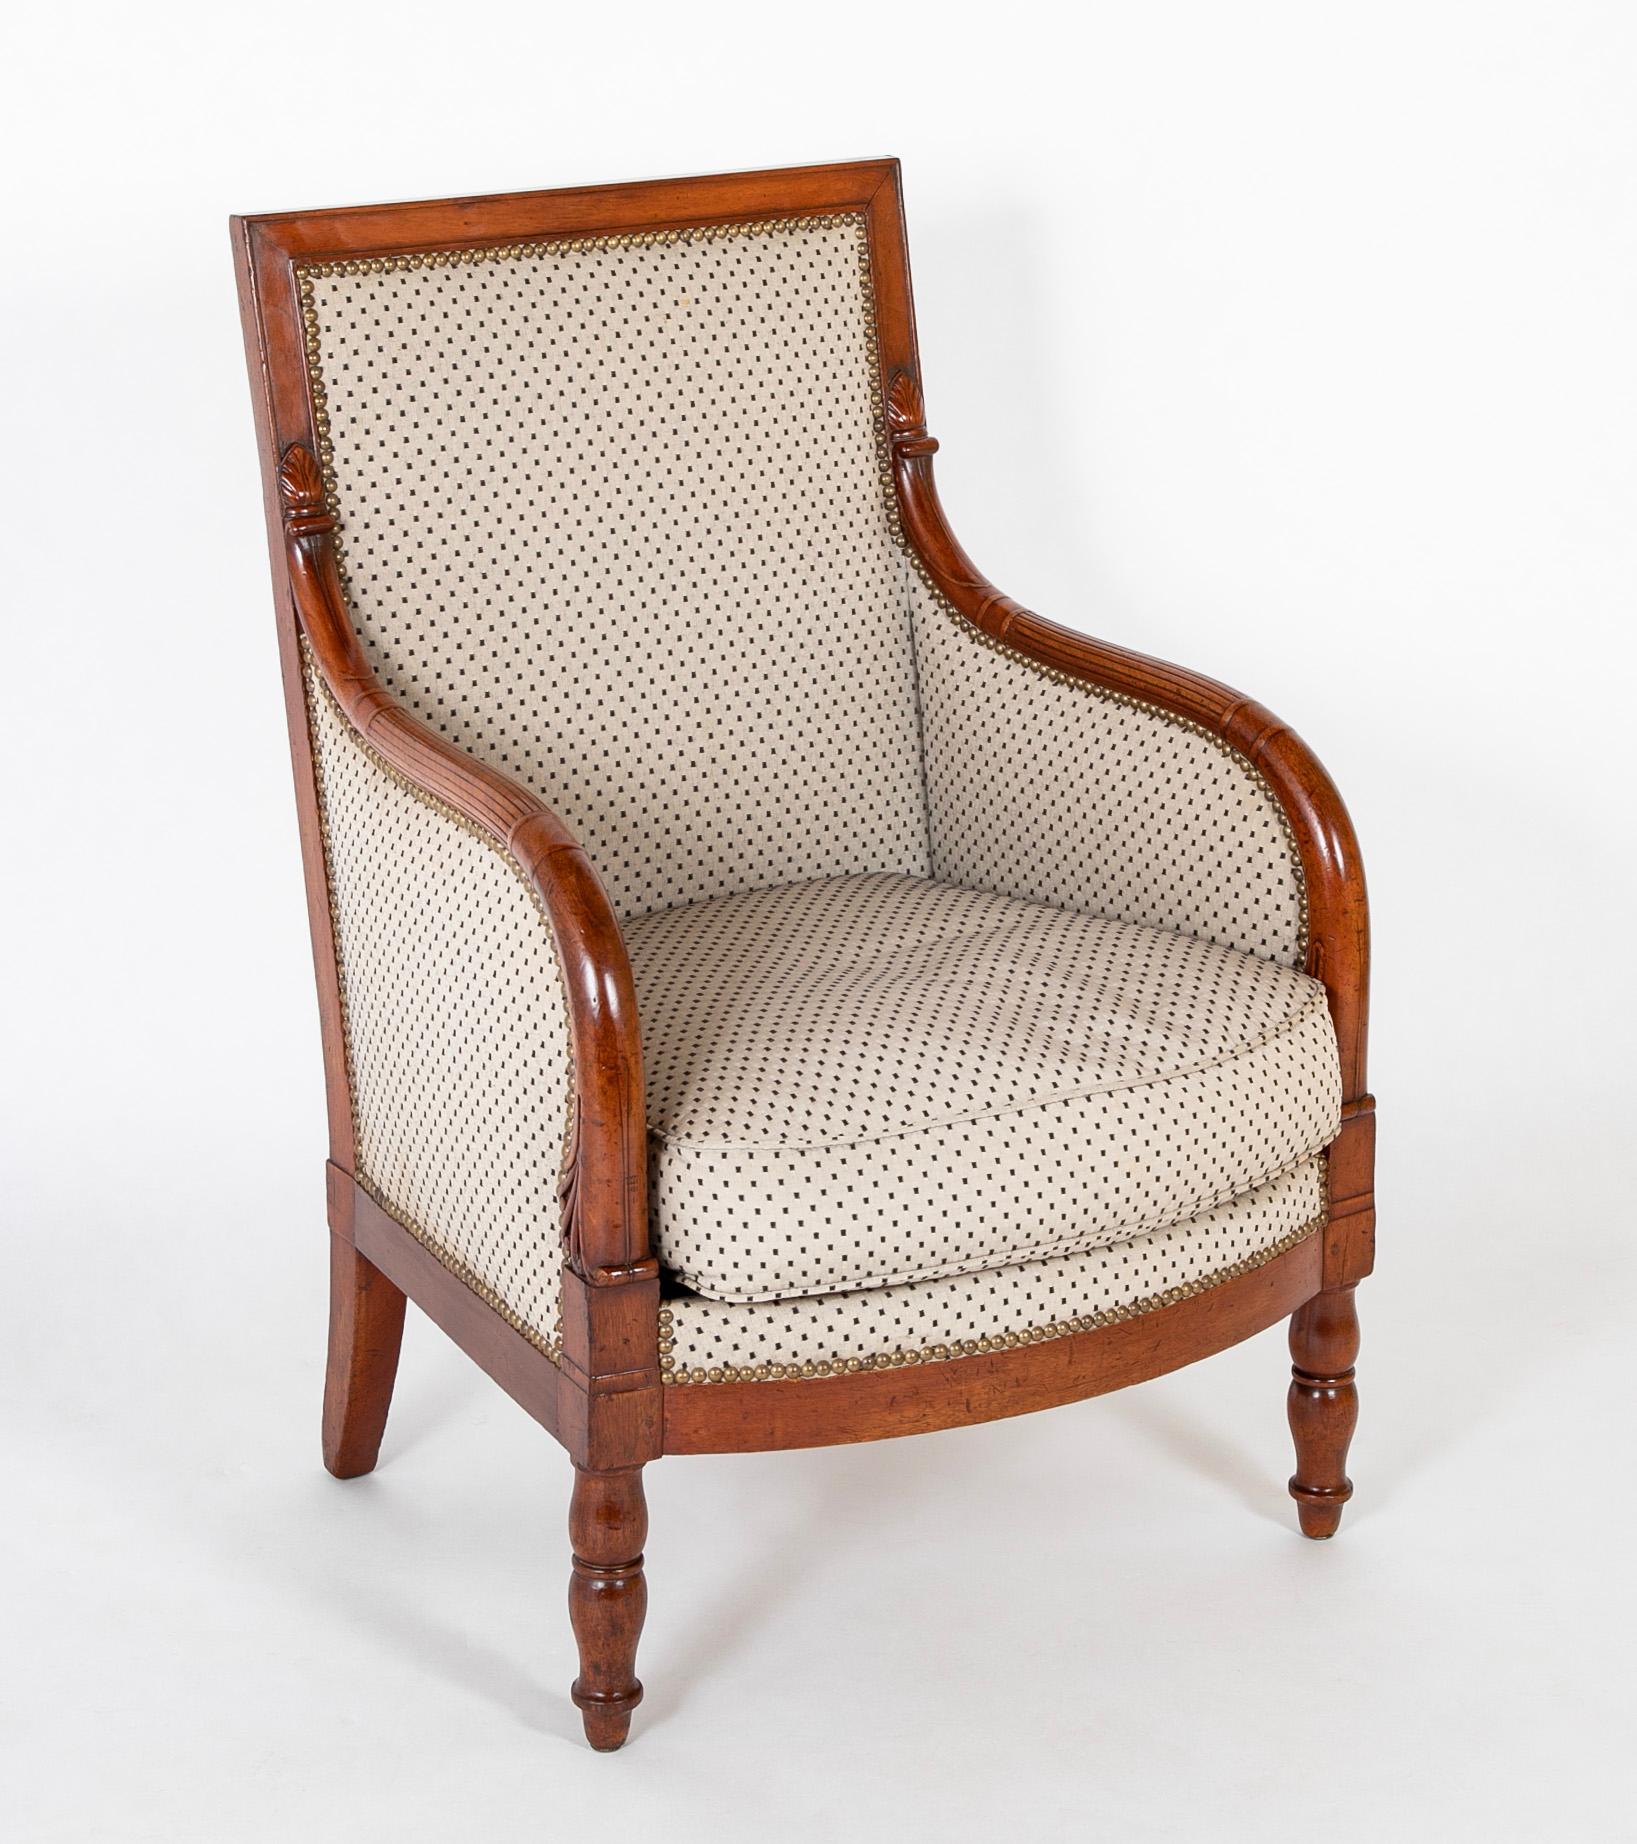 Cette paire de chaises spacieuses, parfaitement conçues et exécutées, a été créée par l'atelier de George Jacob et son fils, François, pendant la période Empire dans leur atelier parisien de la rue Meslee.  Les Jacobs ont été une dynastie de premier